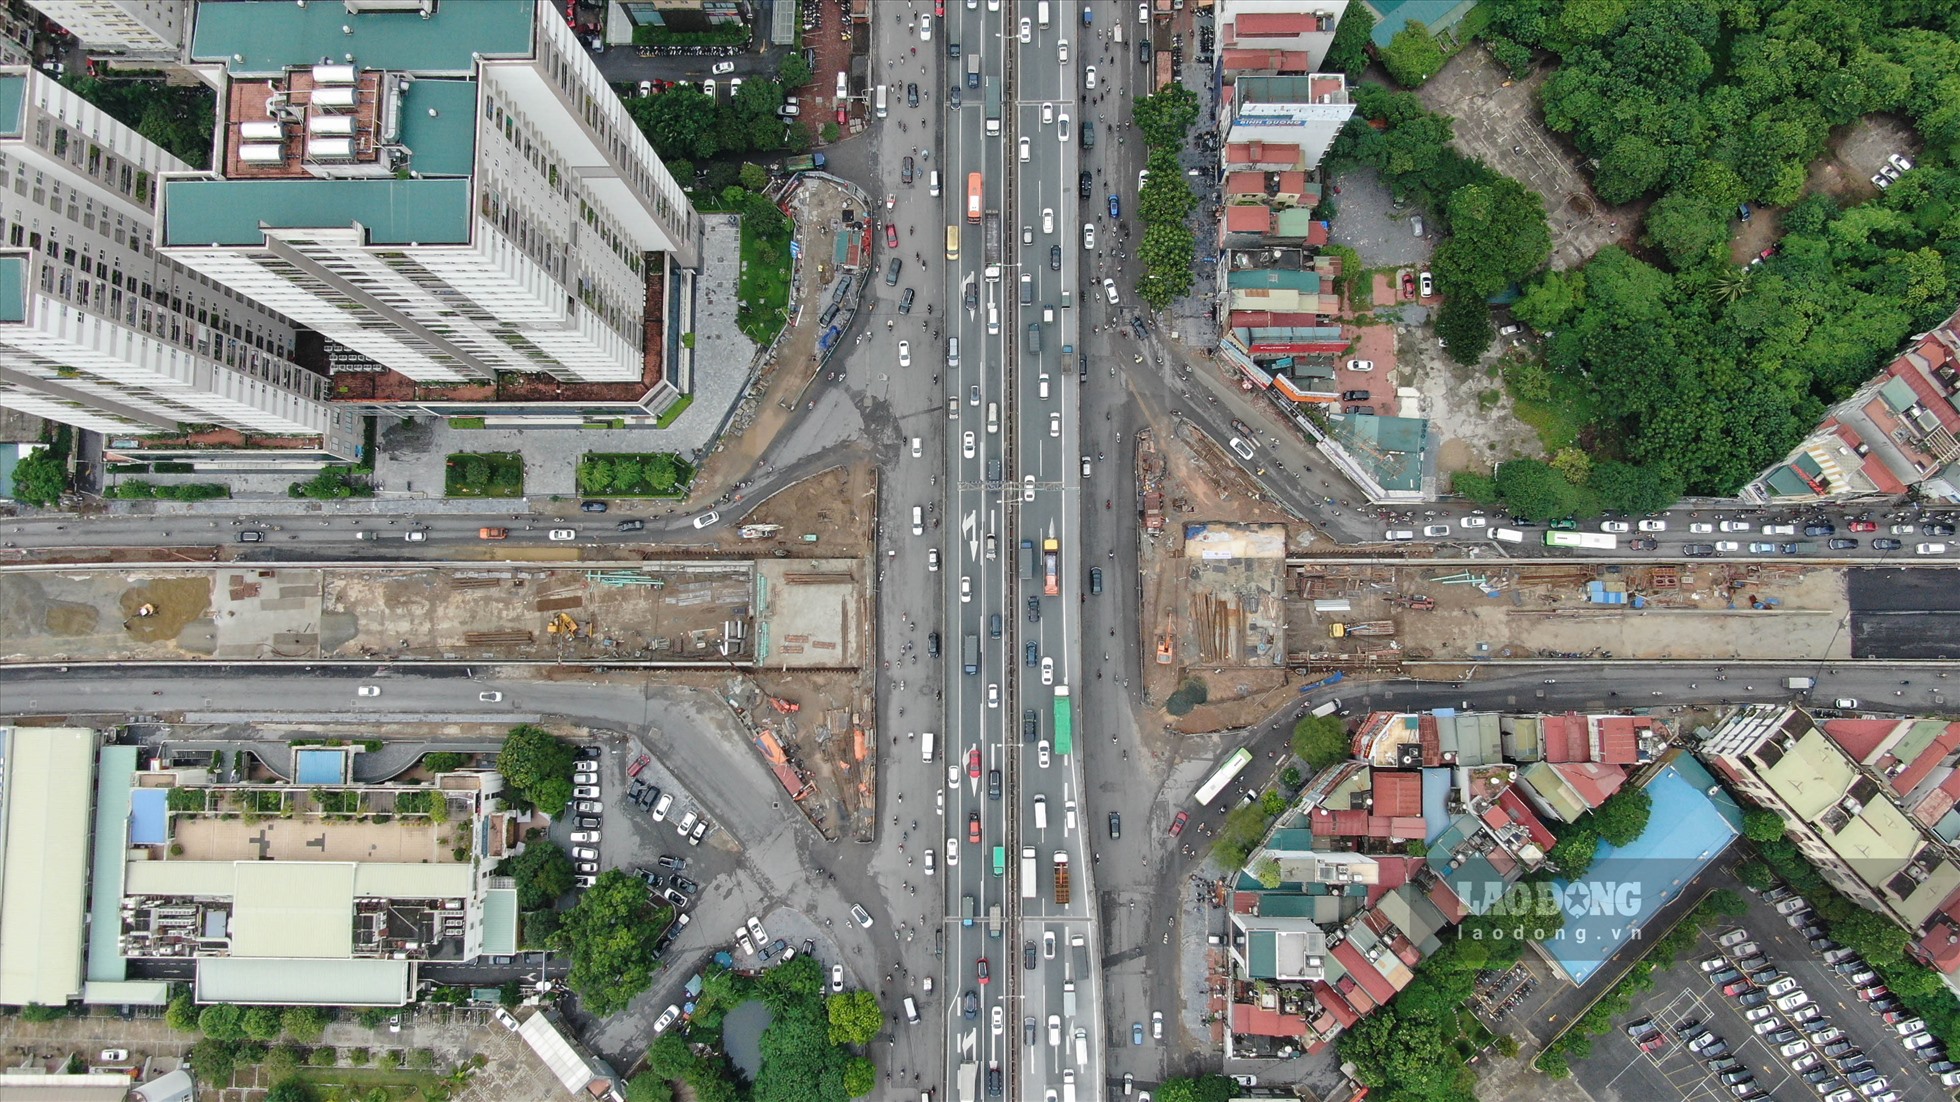 UBND TP Hà Nội đã yêu cầu Ban Quản lý dự án (QLDA) đầu tư xây dựng công trình giao thông hoàn thành và tiến hành thông xe dự án hầm chui Lê Văn Lương - Vành đai 3 vào ngày 10.10 tới đây.